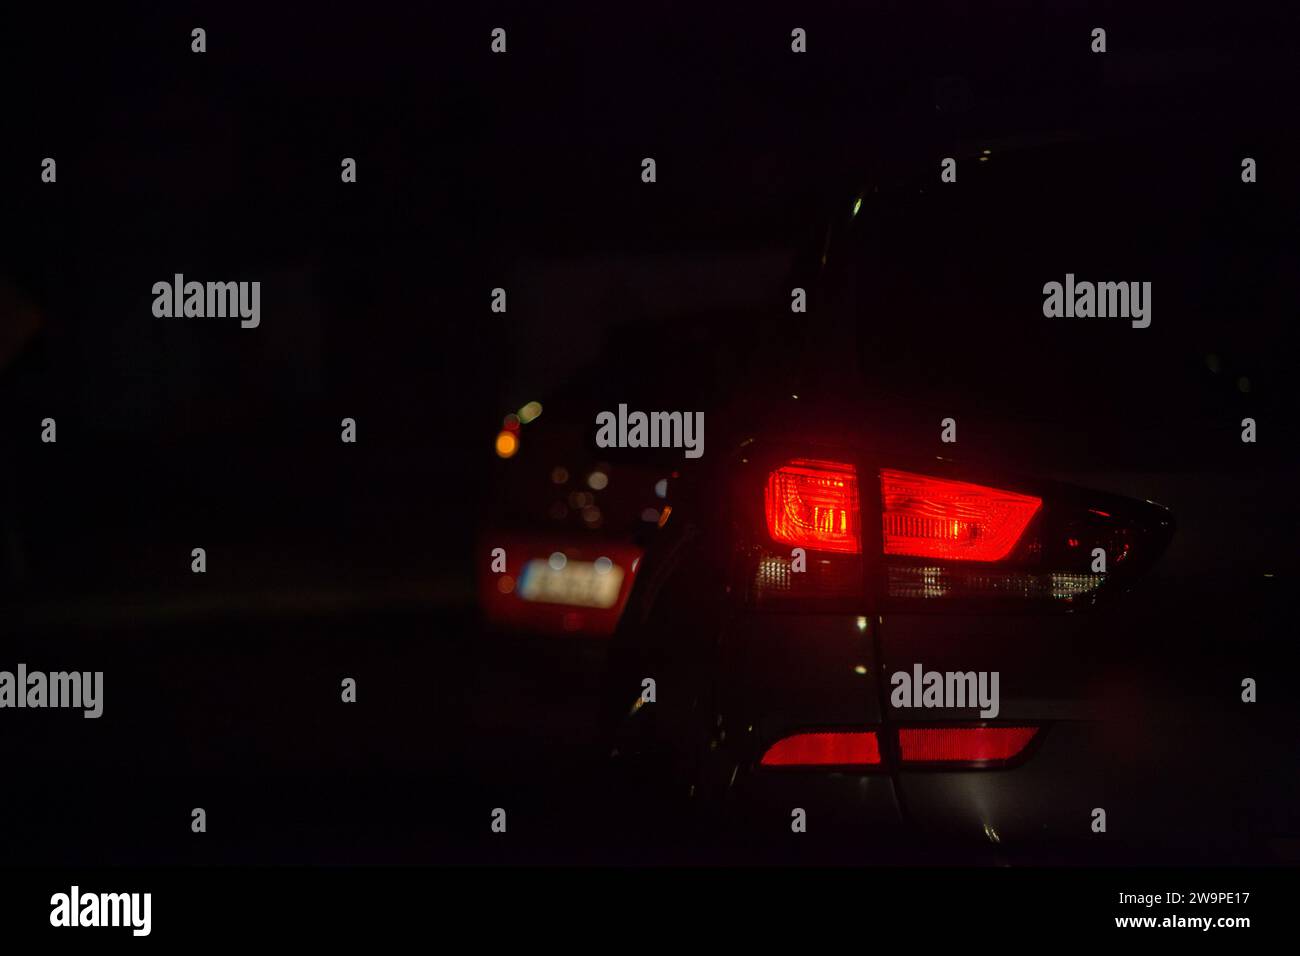 Die Rücklichter leuchten hell im Nachtverkehr, eine faszinierende Szene der urbanen Bewegung. Stockfoto